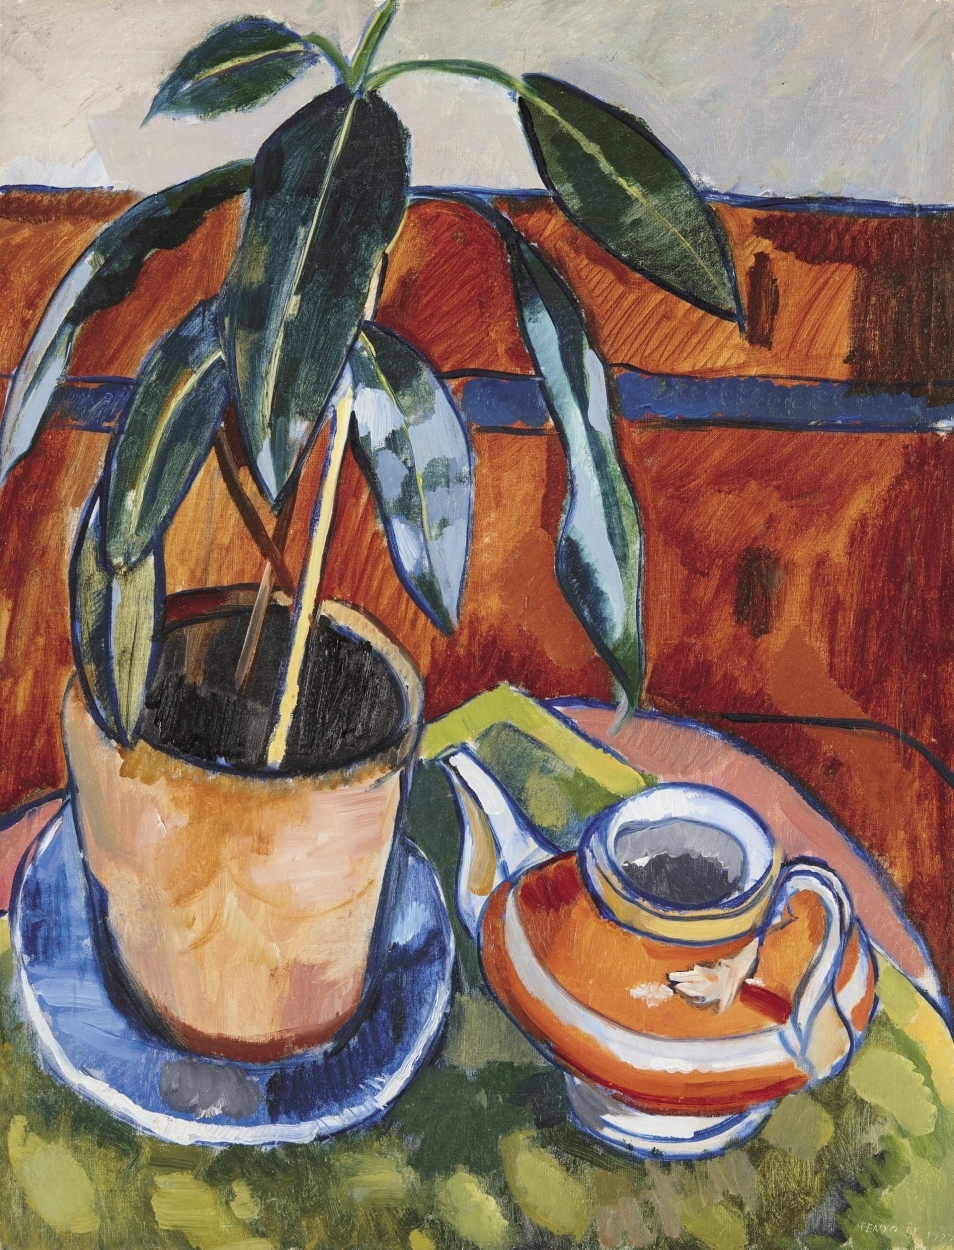 Fenyő György (1904-1978) Still-life with a Red Pot, 1927